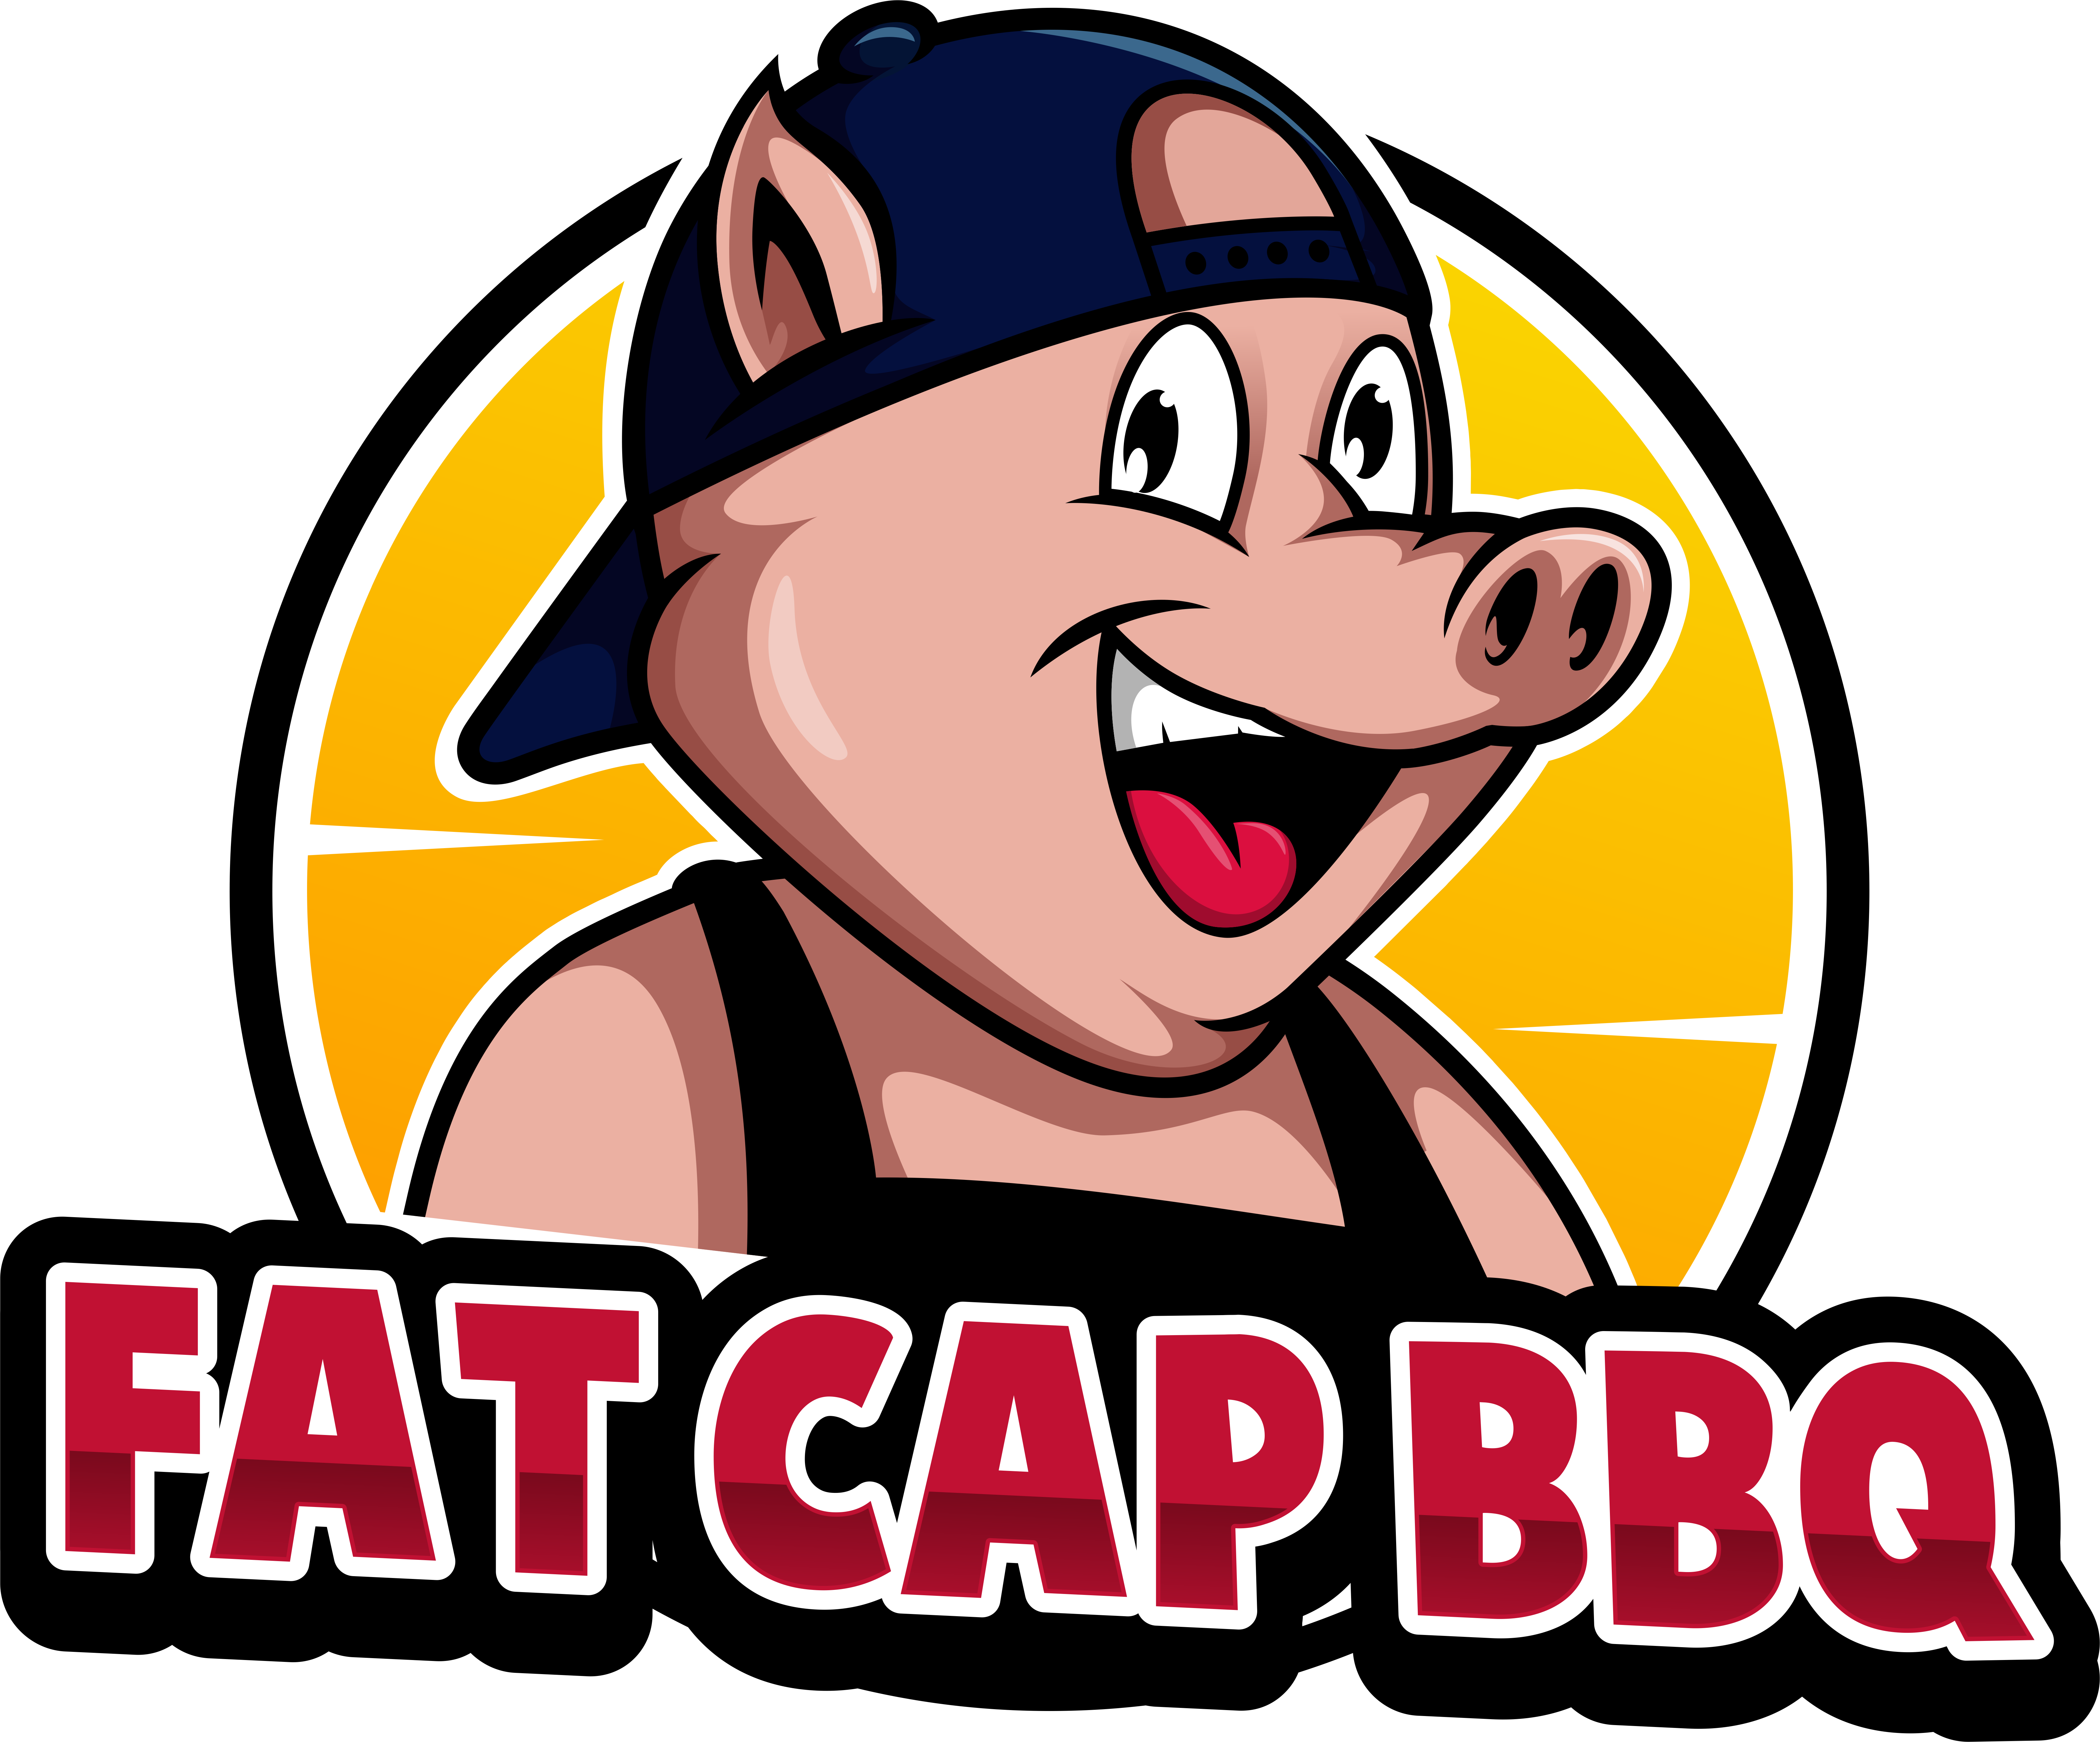 Fat Cap BBQ